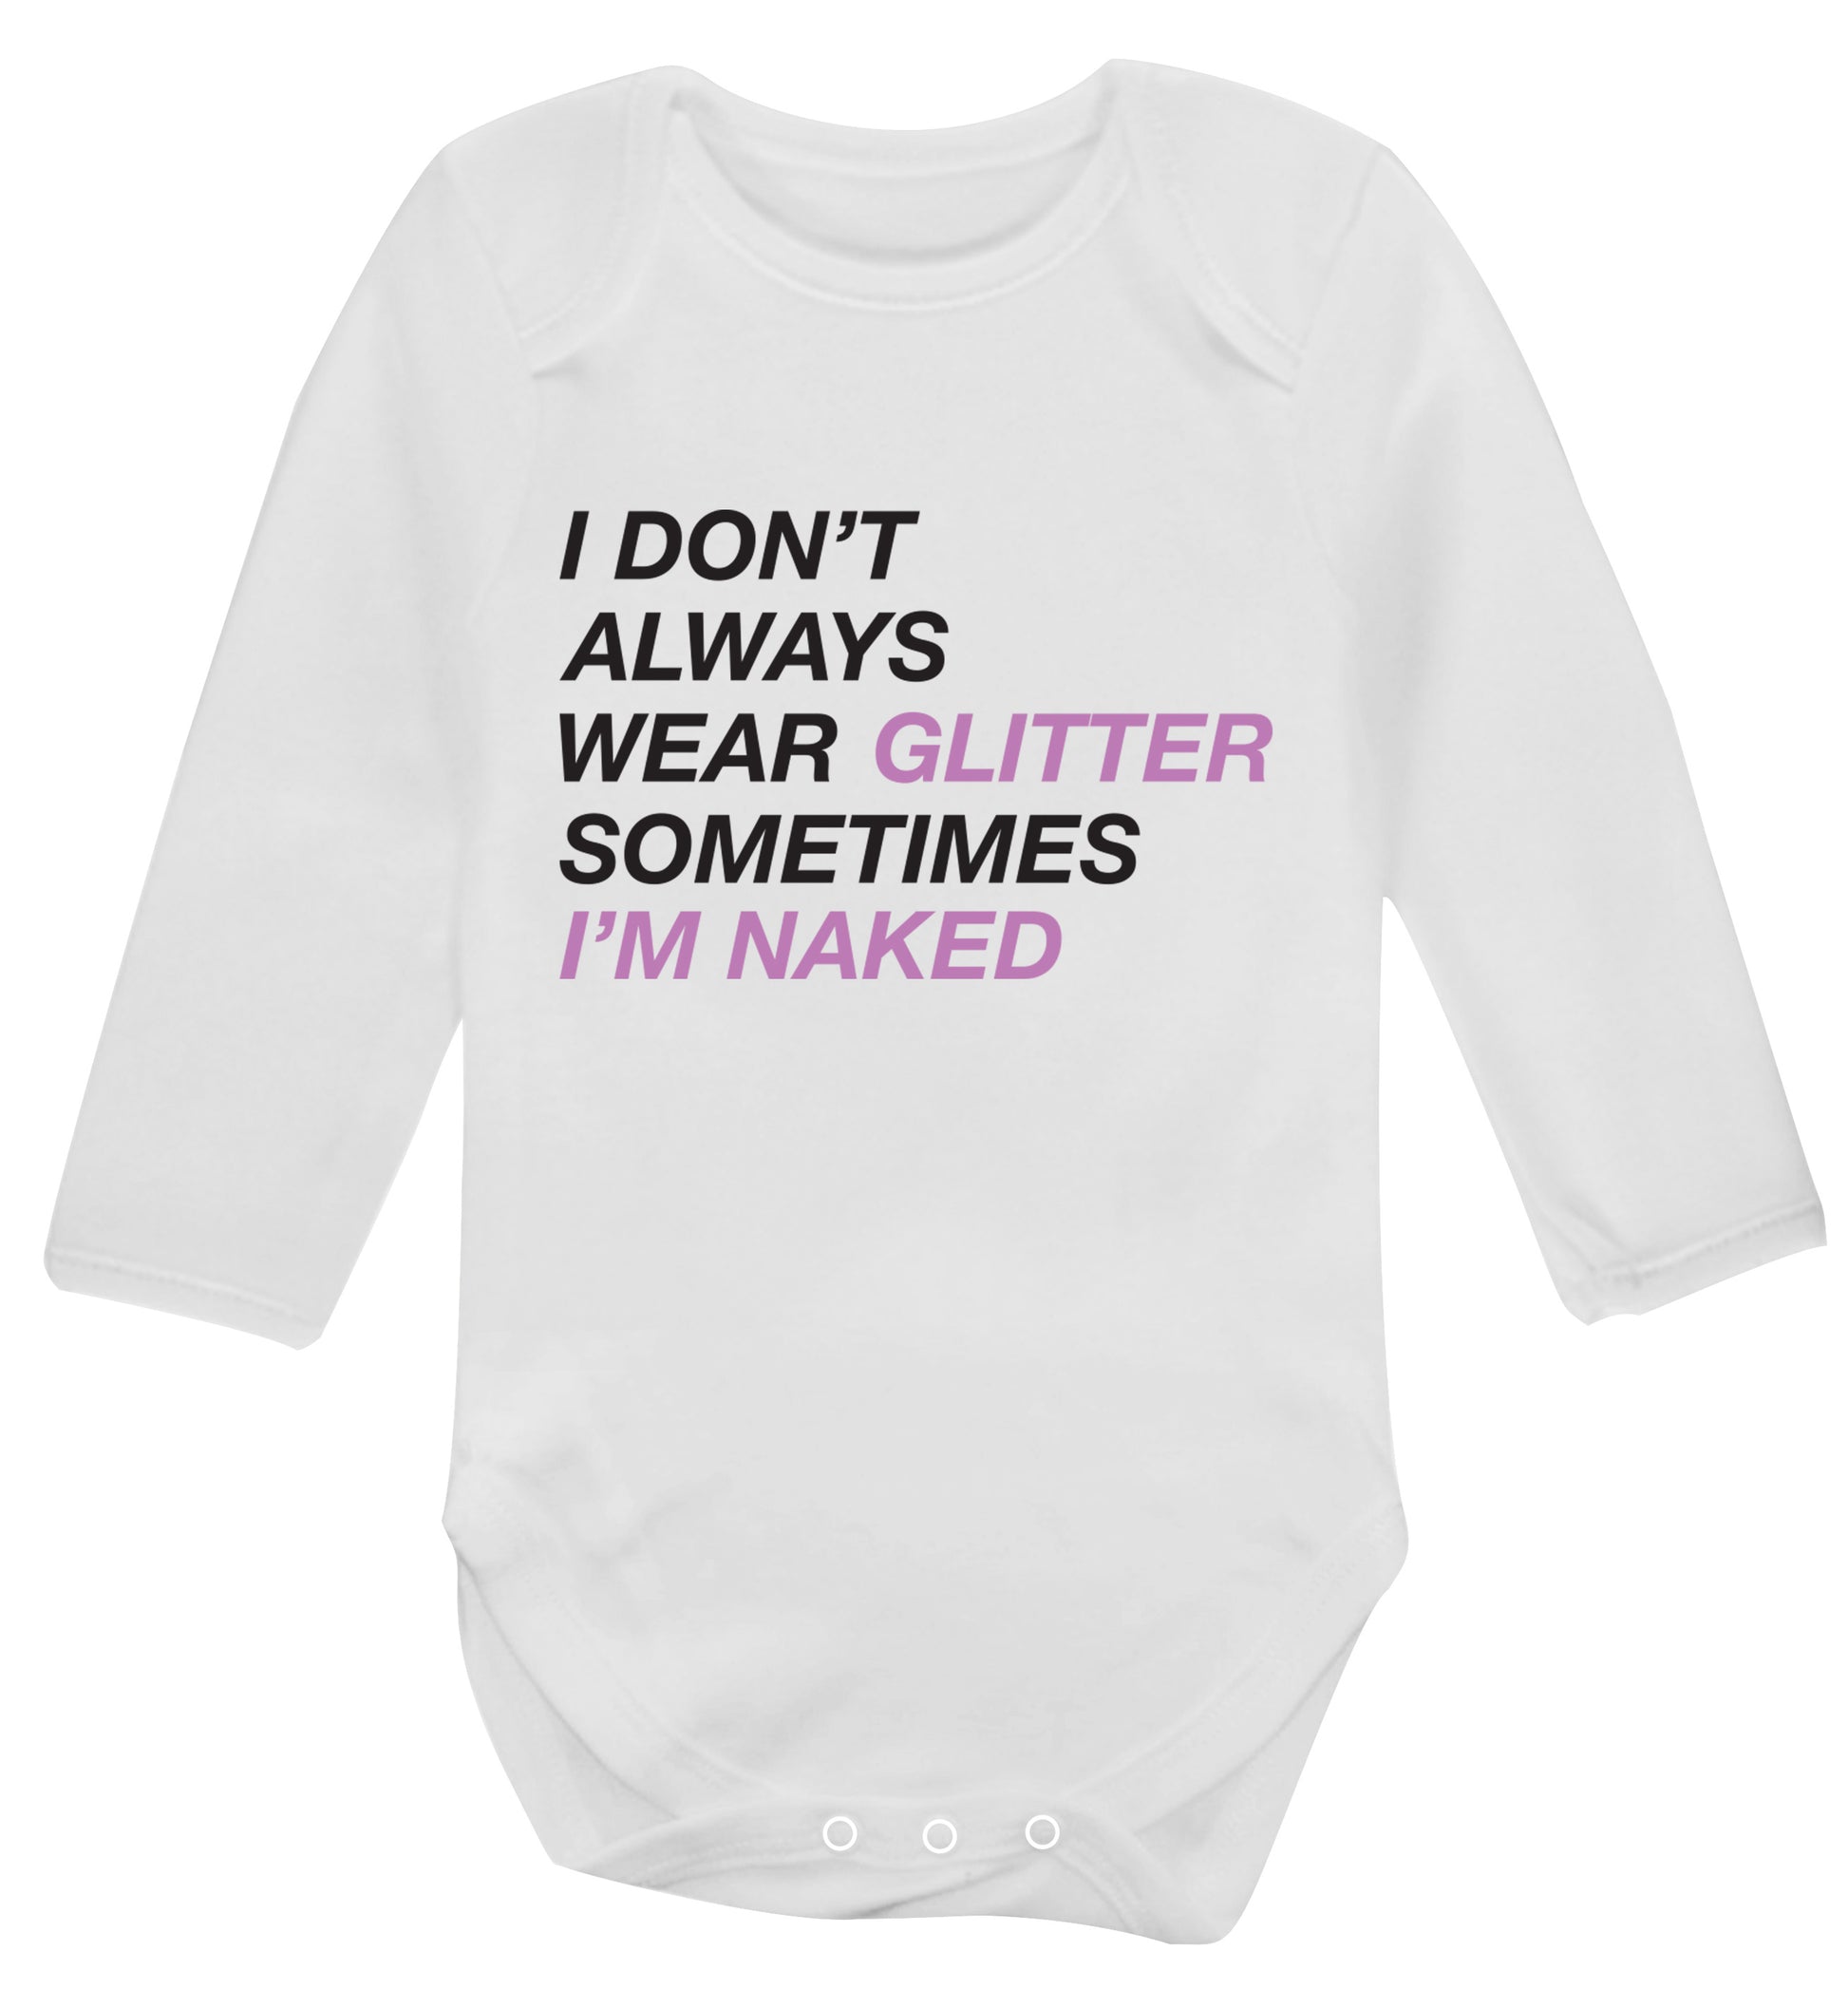 I don't always wear glitter sometimes I'm naked! Baby Vest long sleeved white 6-12 months